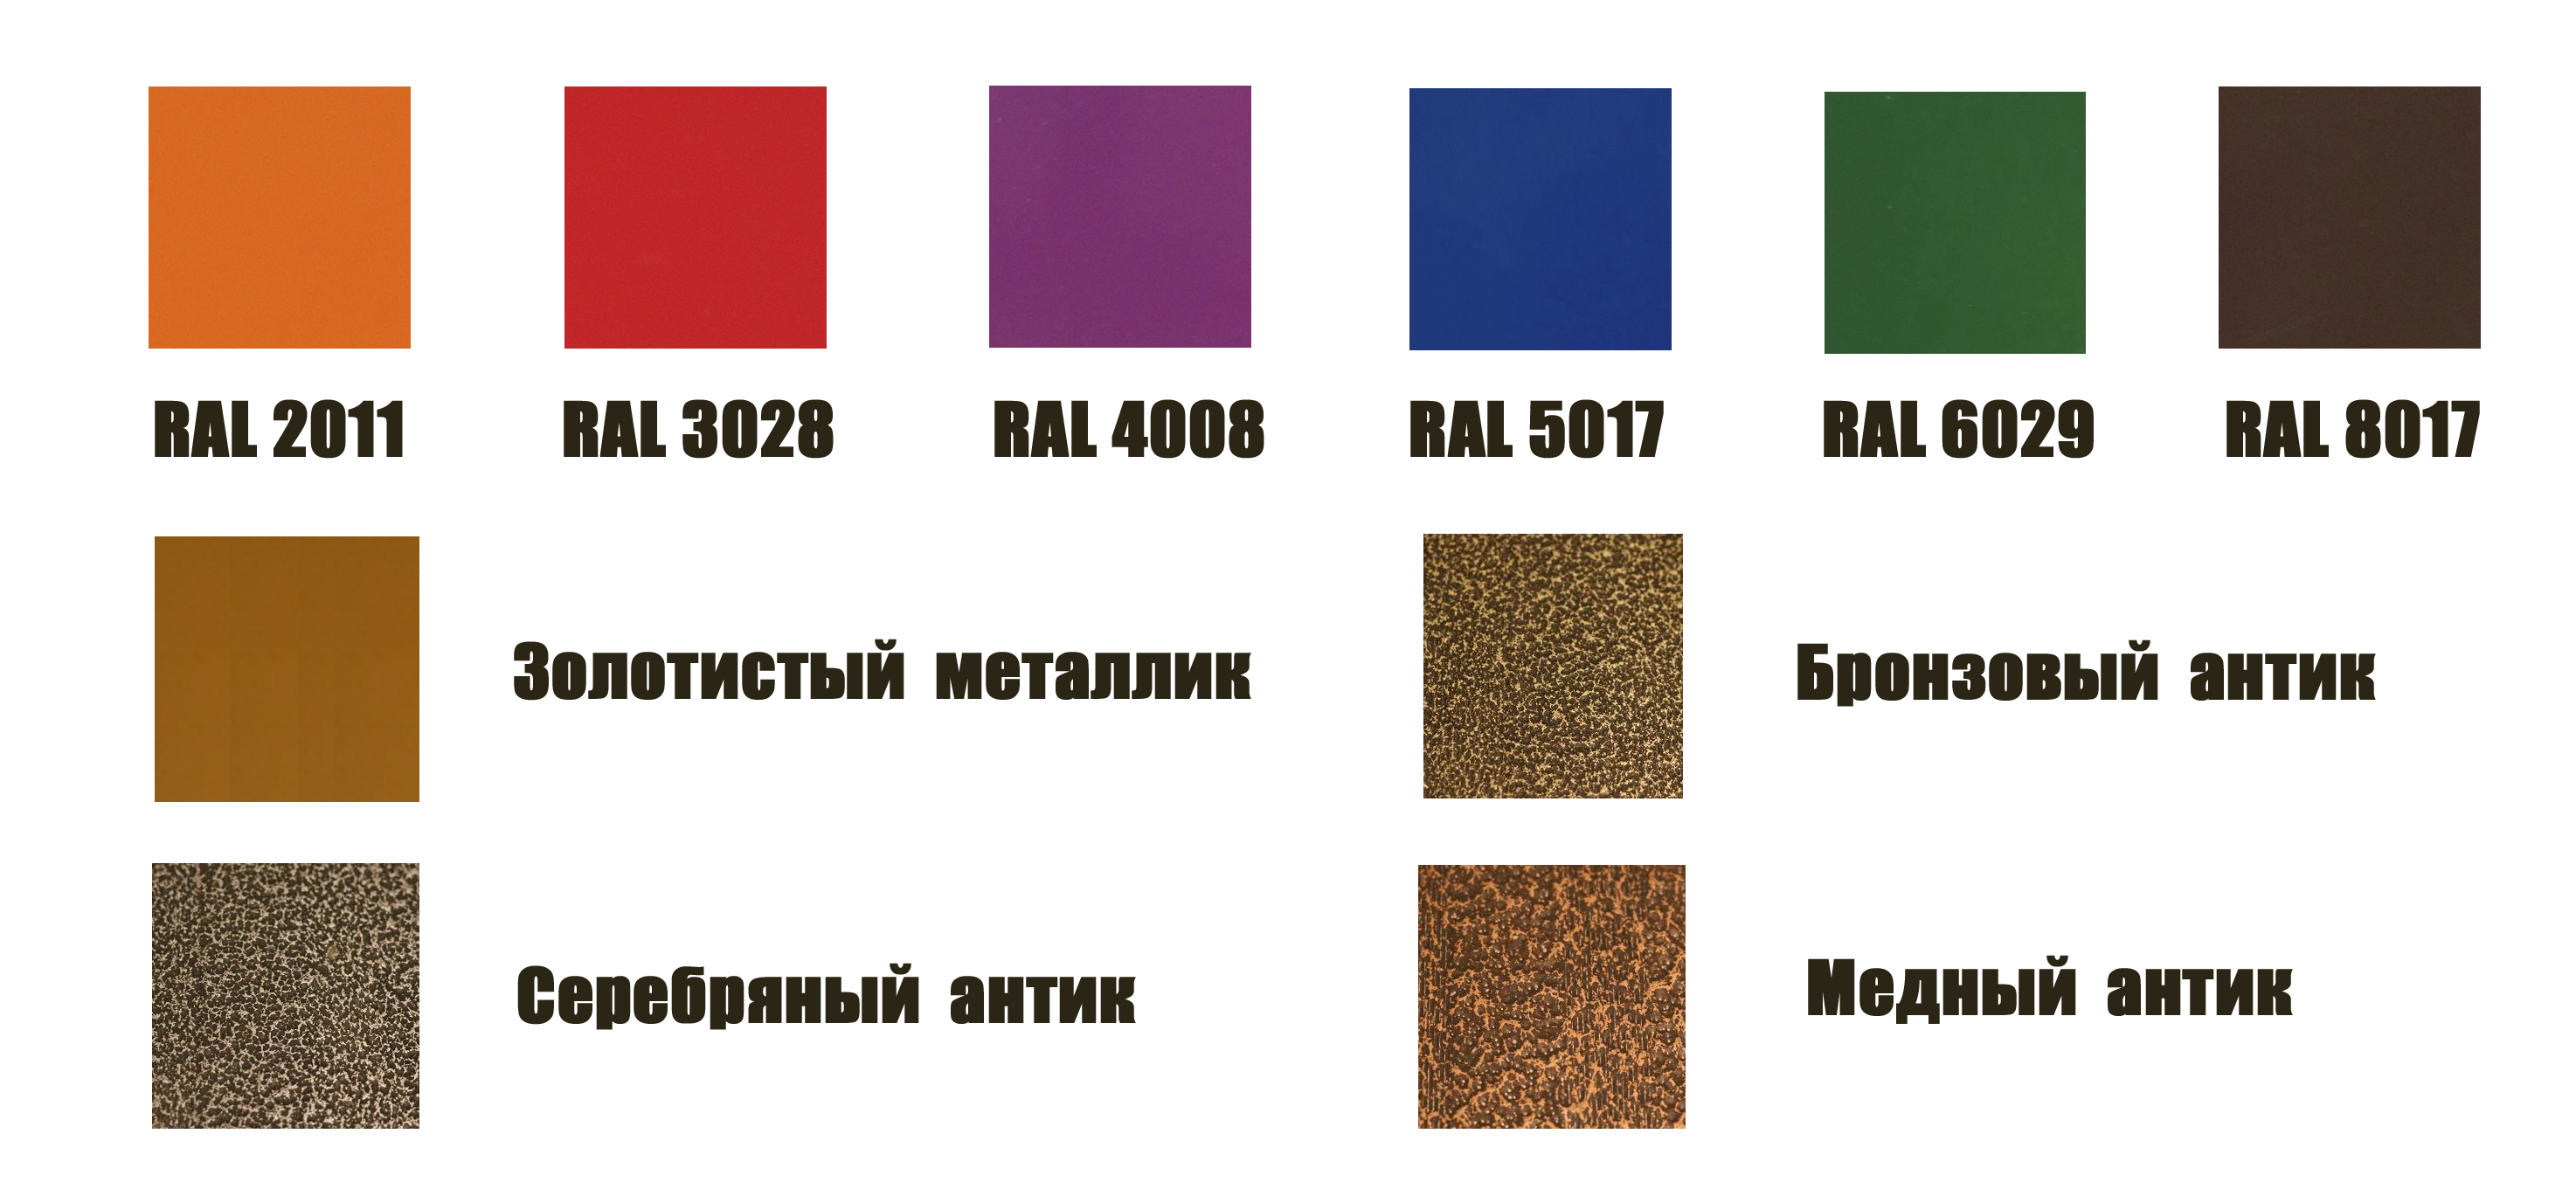 Каталог популярных цветов по RAL для покраски оцинкованных грядок DeltaPark от компании Удачные Теплицы